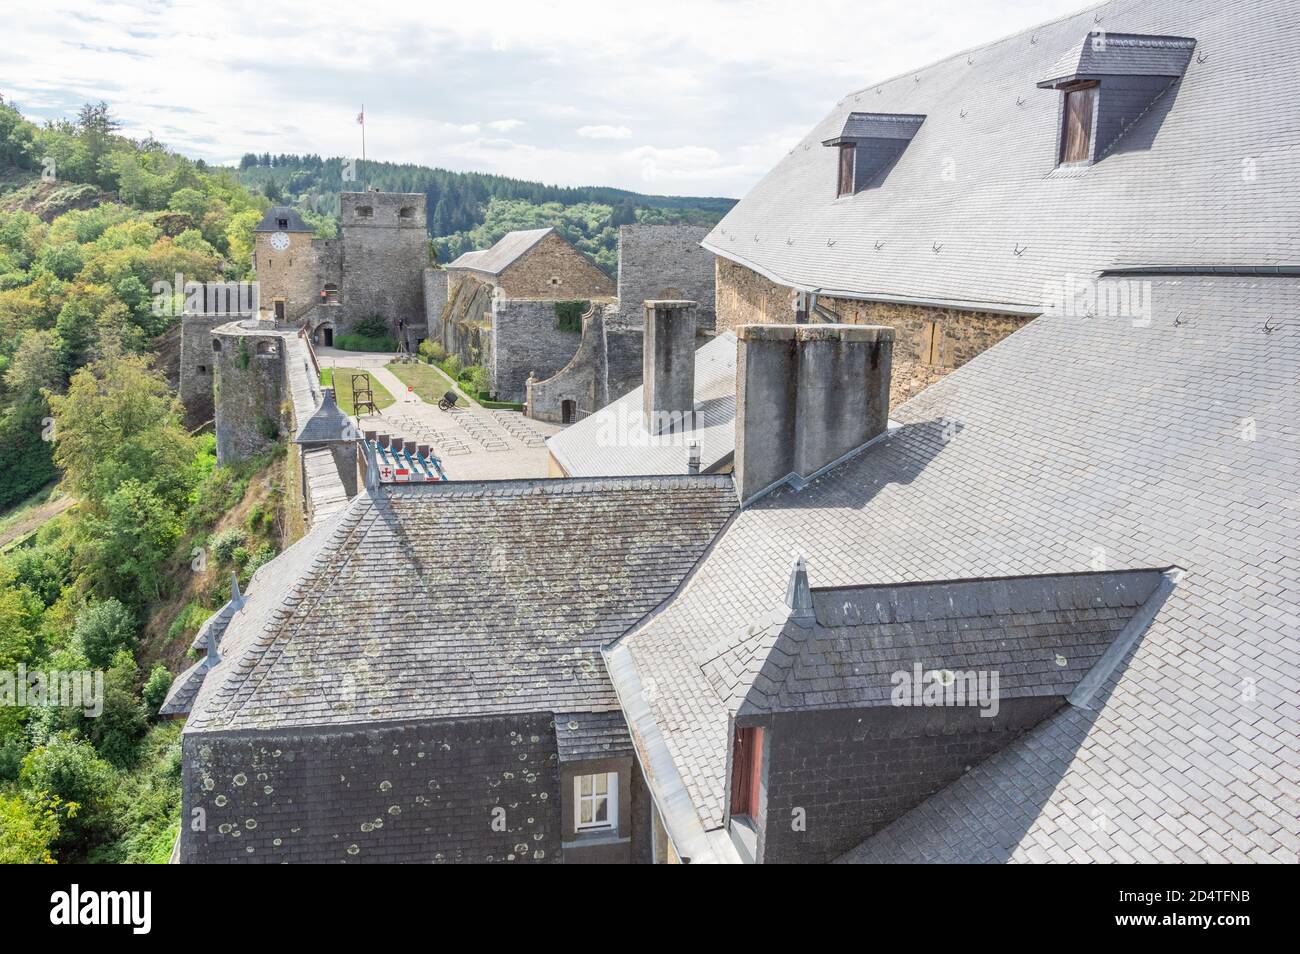 L'enorme e storico castello fortificato - Château de Bouillon - domina la città di Bouillon nella provincia belga del Lussemburgo sulle rive di Semois Foto Stock